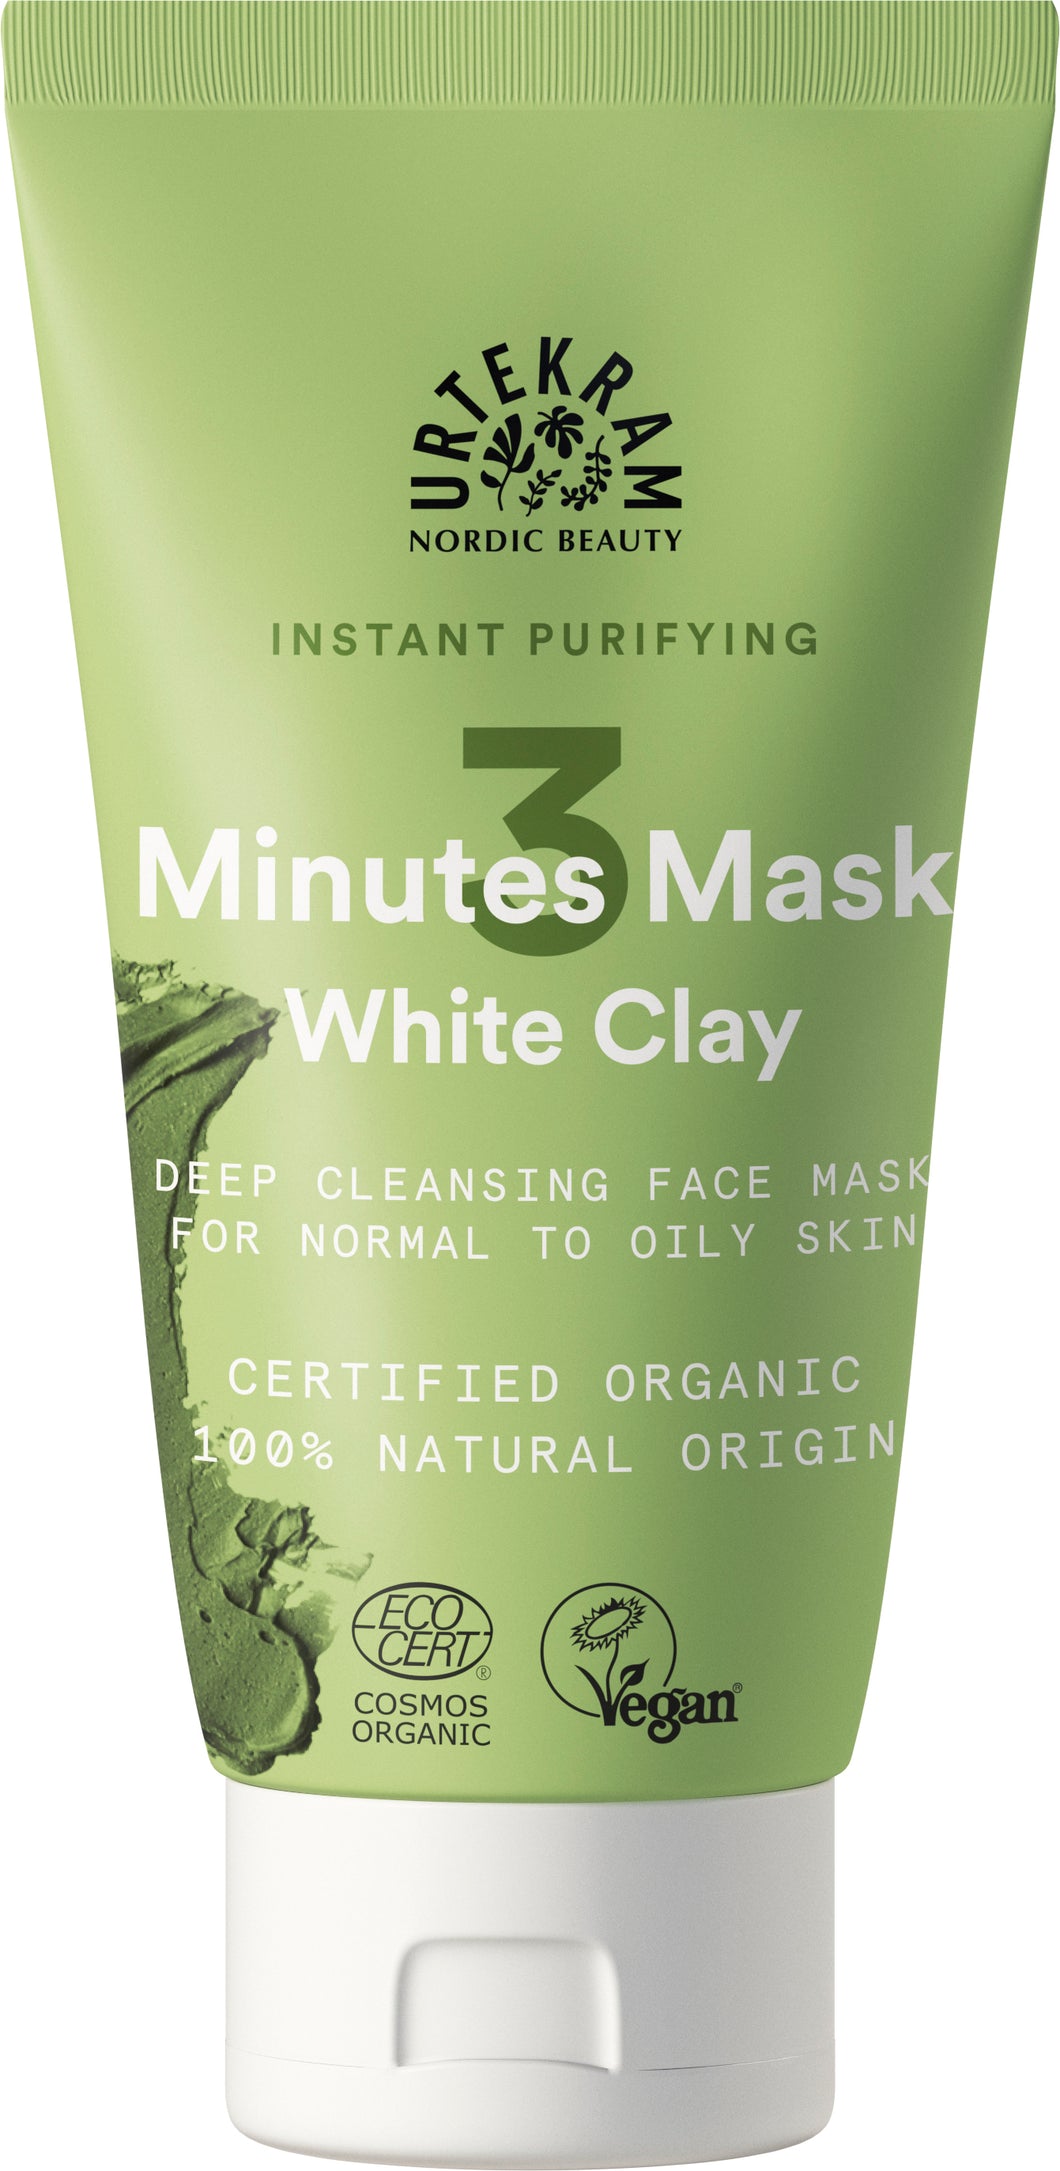 3 Minutes klärende Gesichtsmaske White Clay 75ml